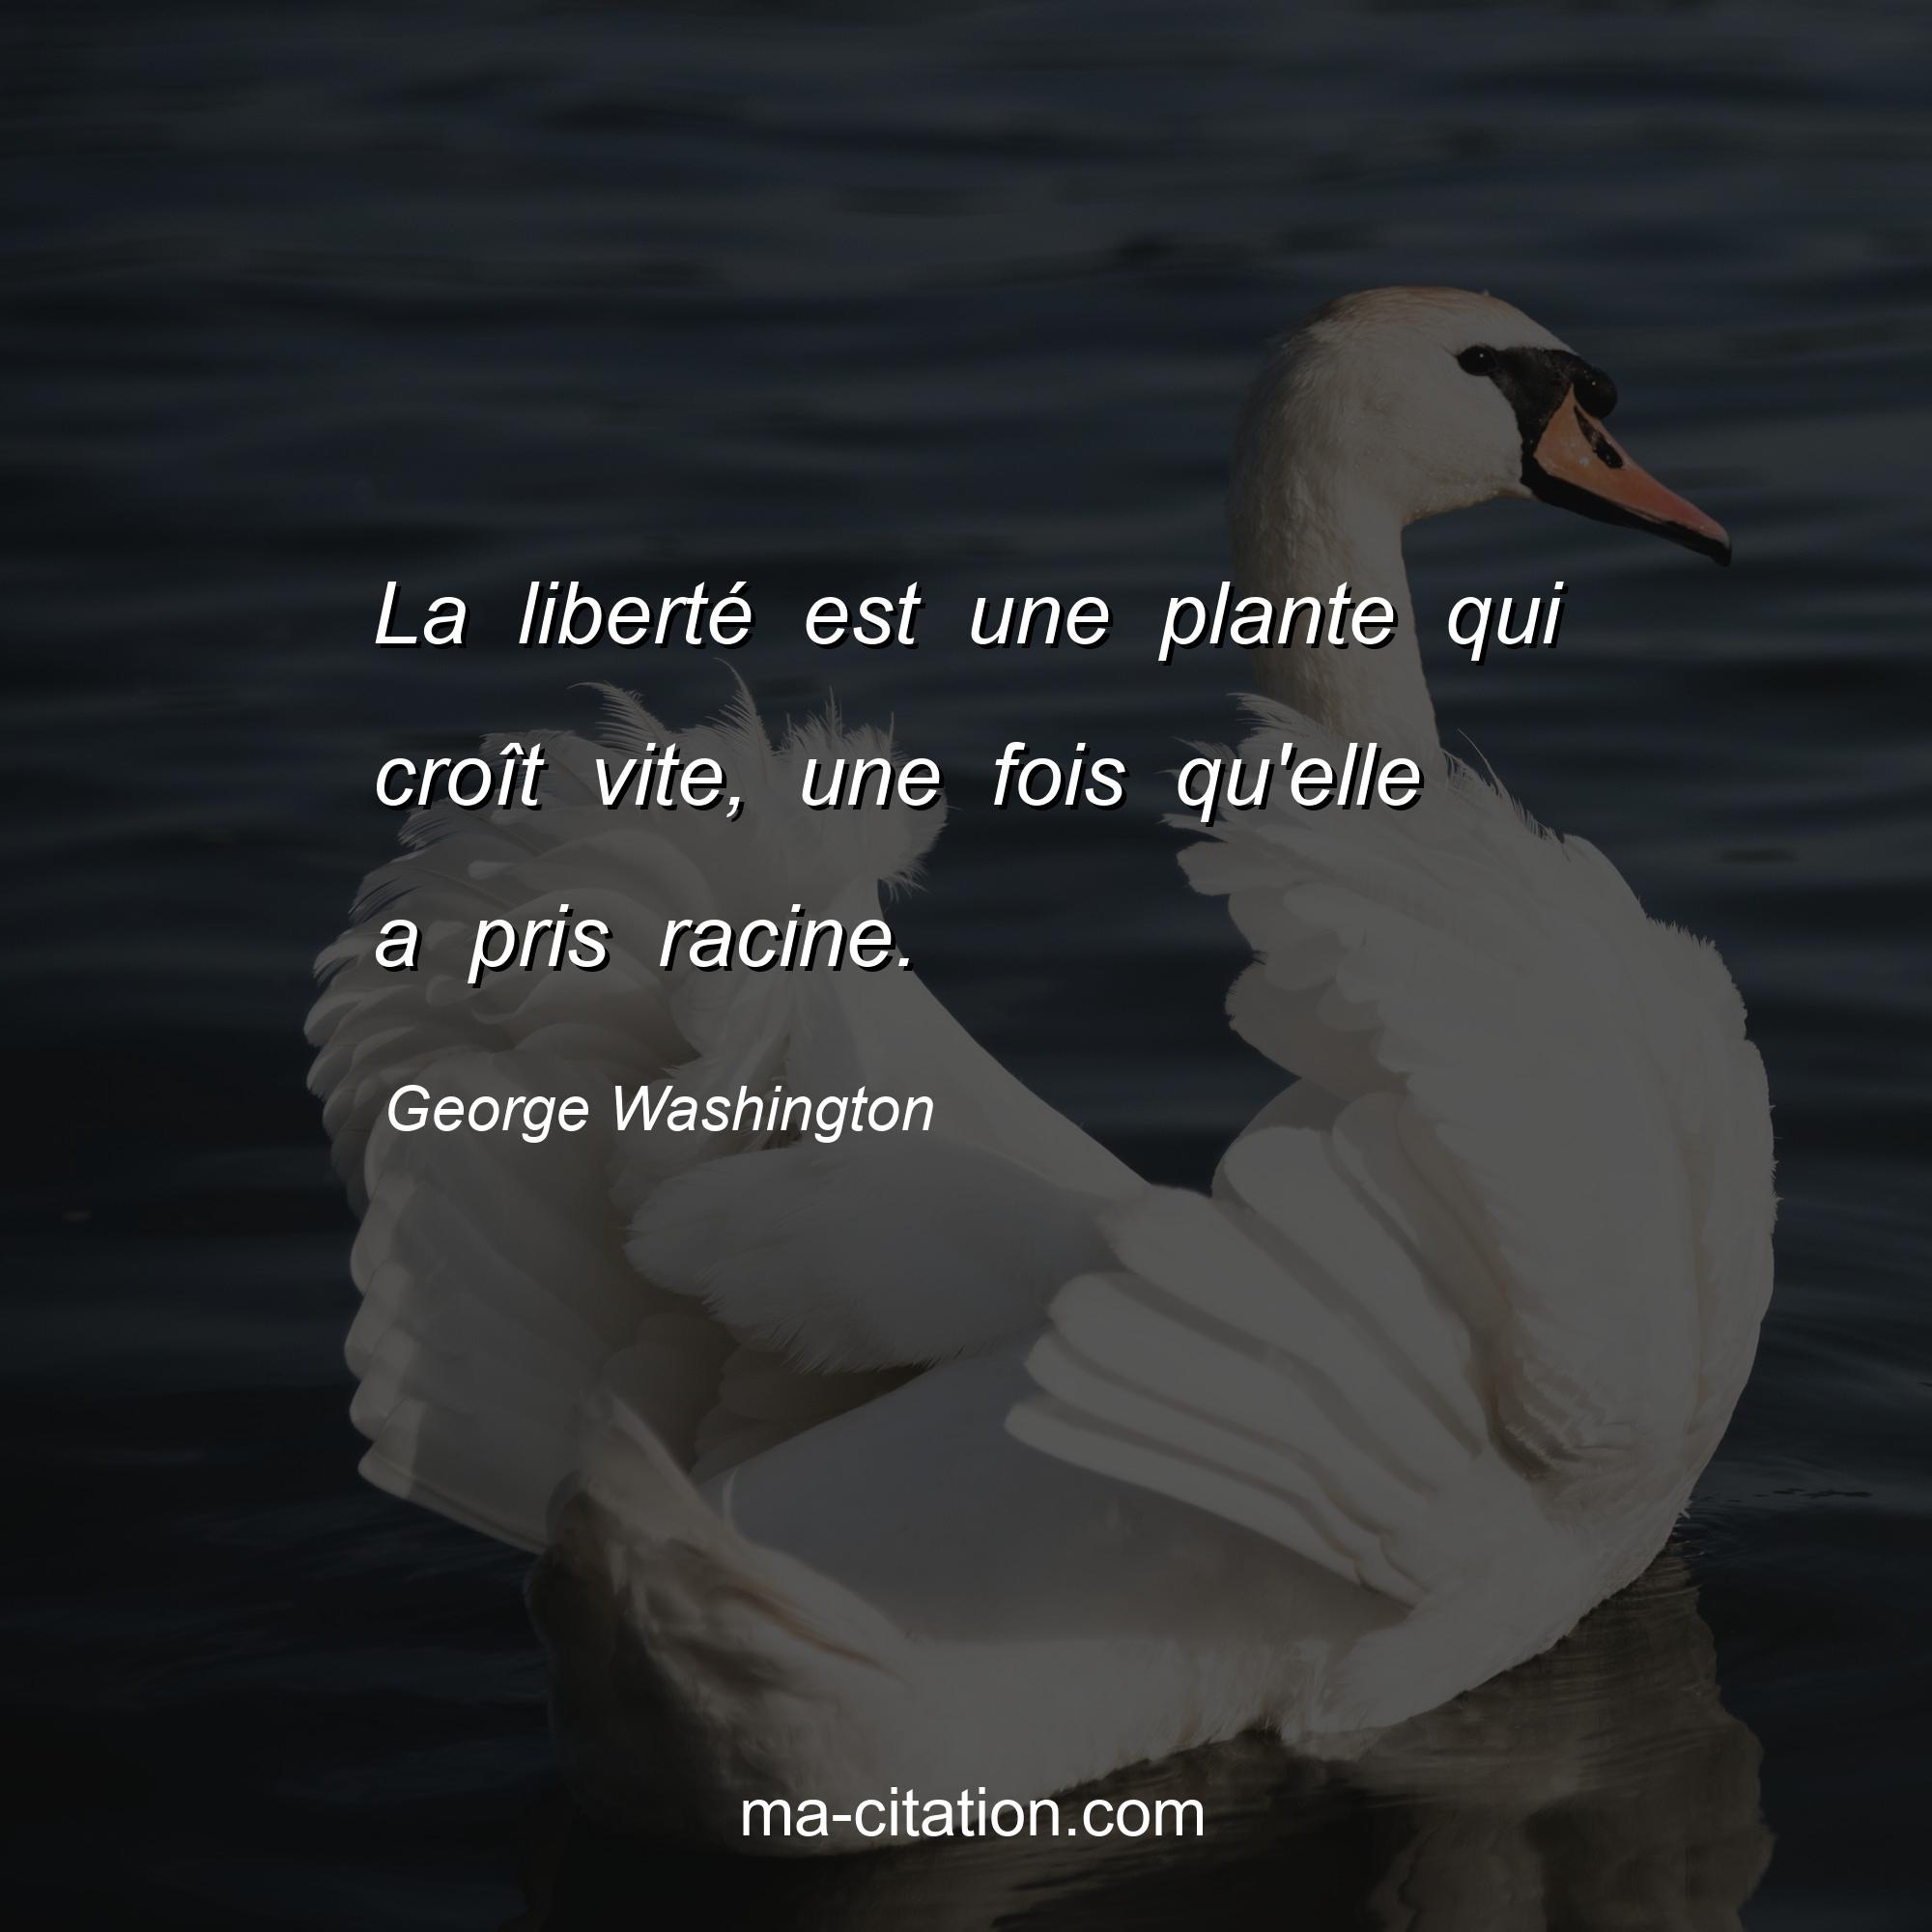 George Washington : La liberté est une plante qui croît vite, une fois qu'elle a pris racine.